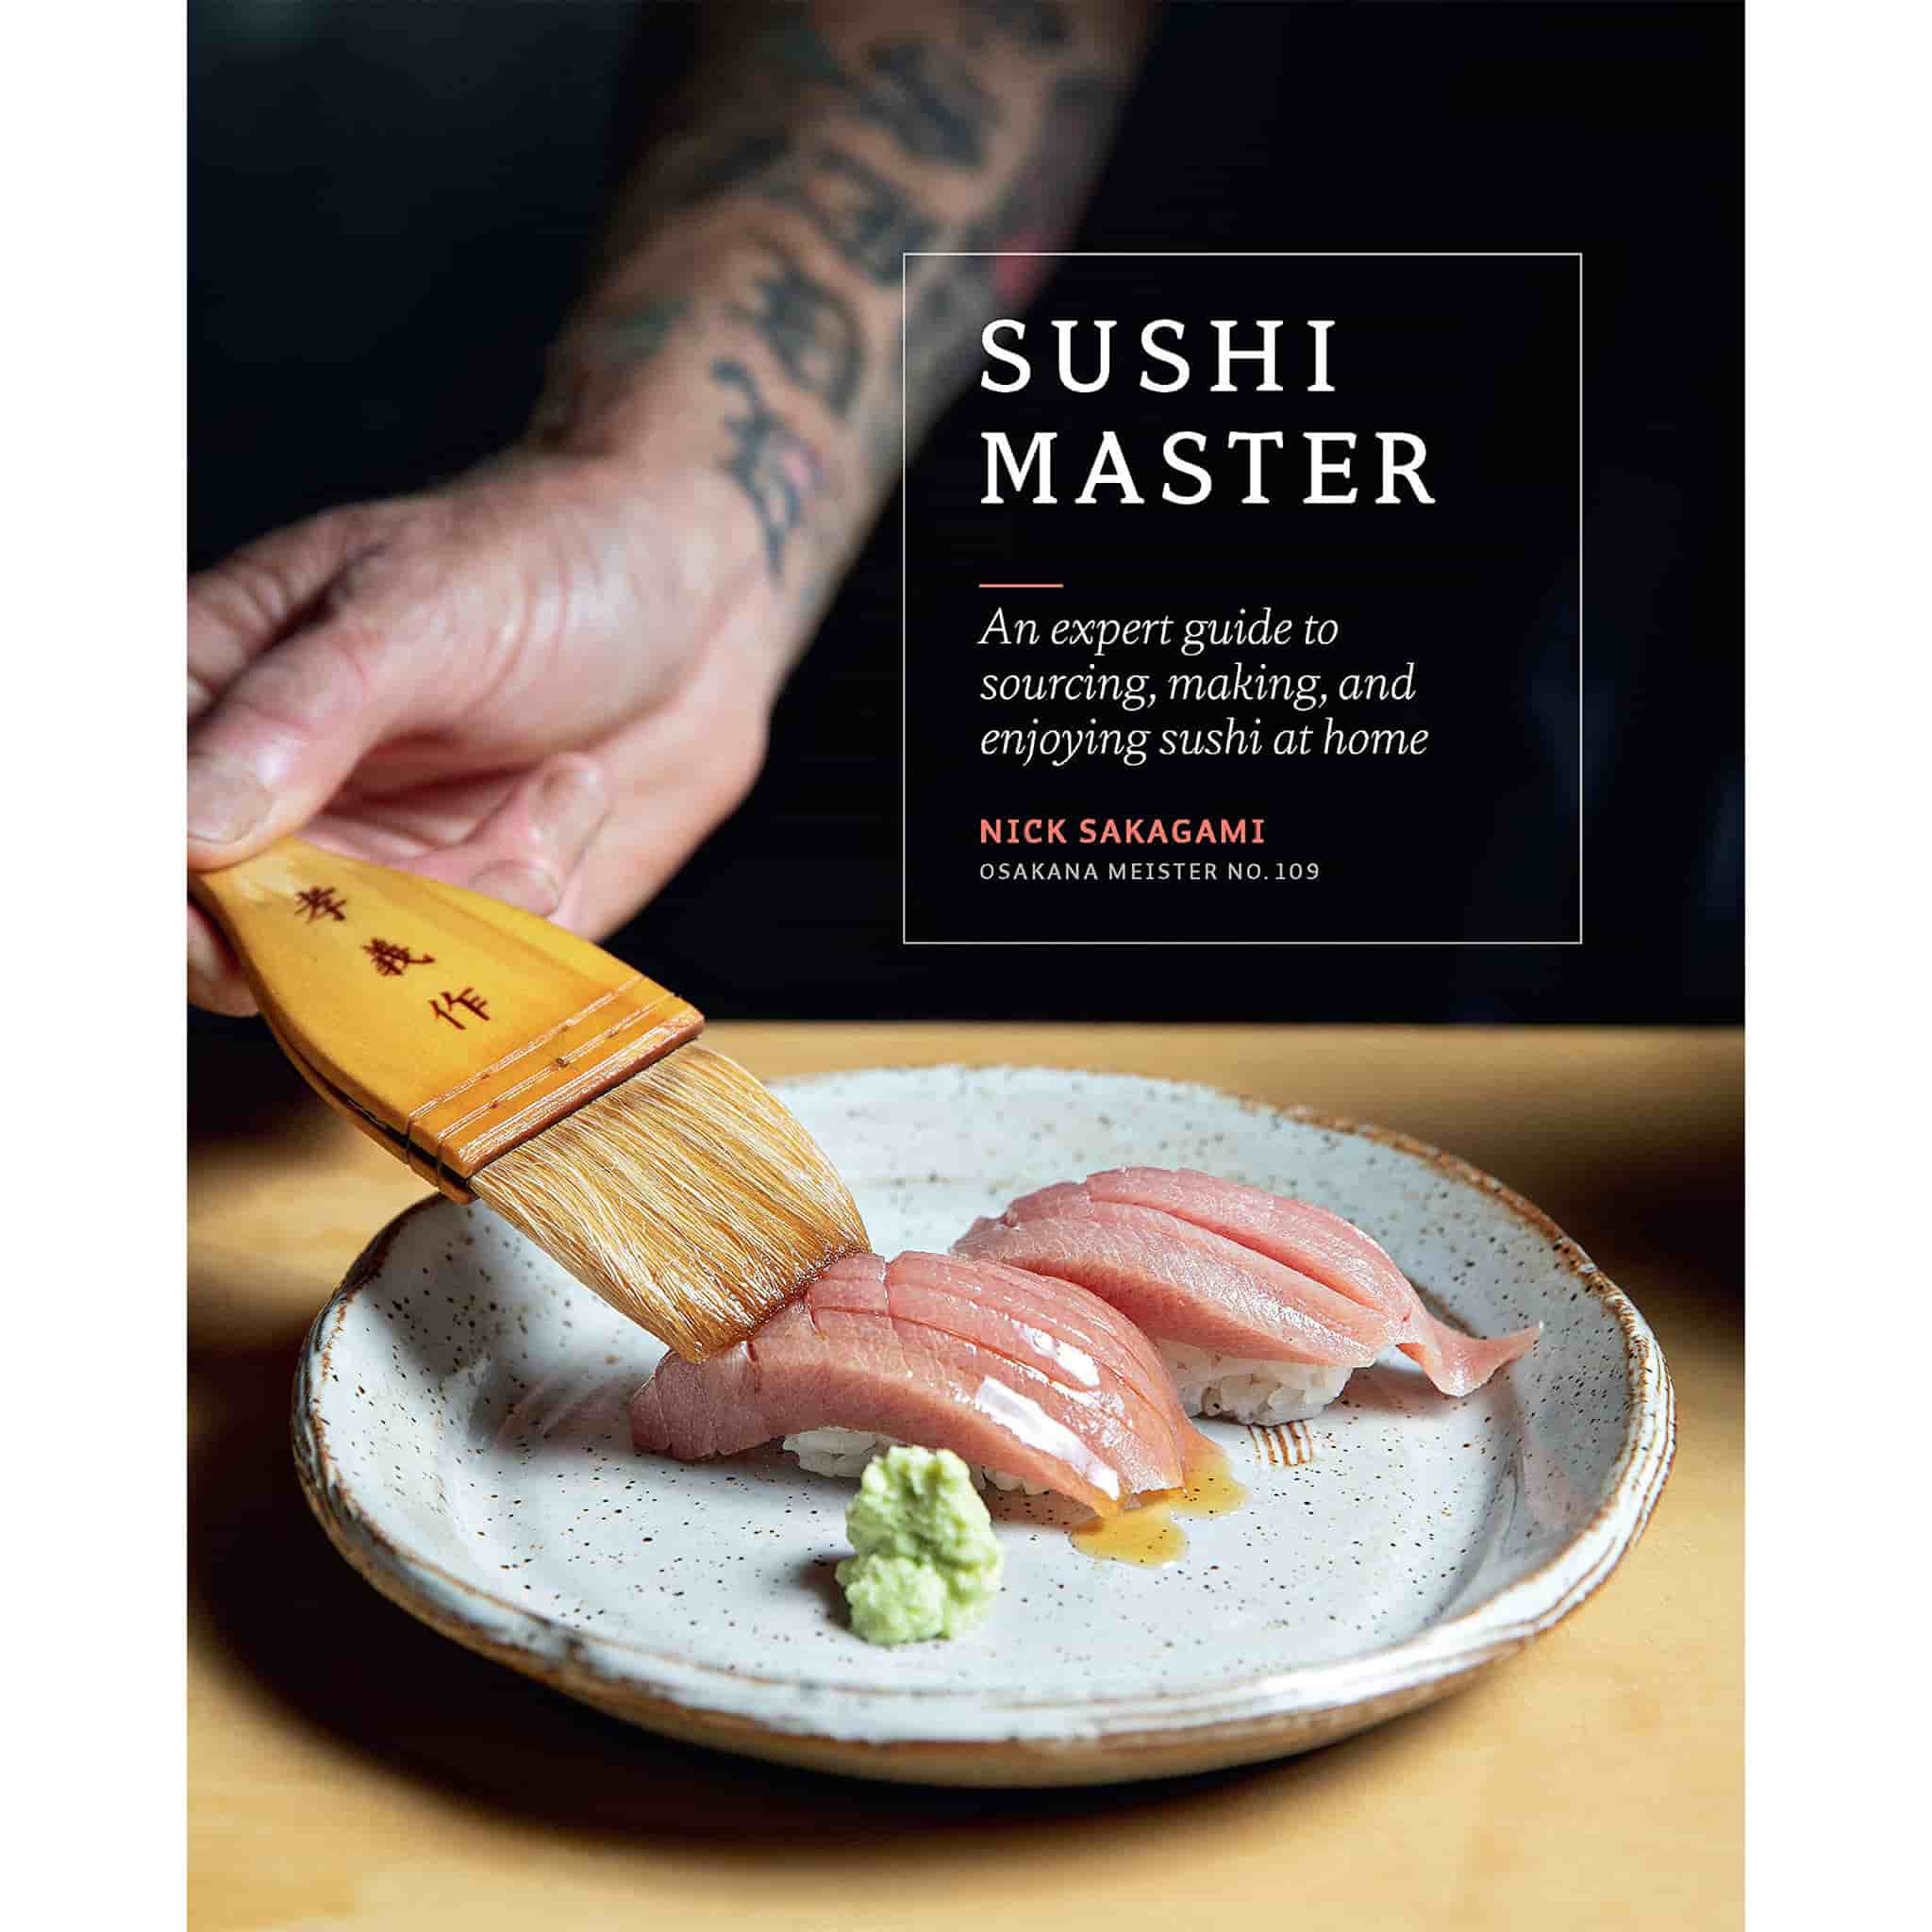 Sushi Master by Nick Sakagami